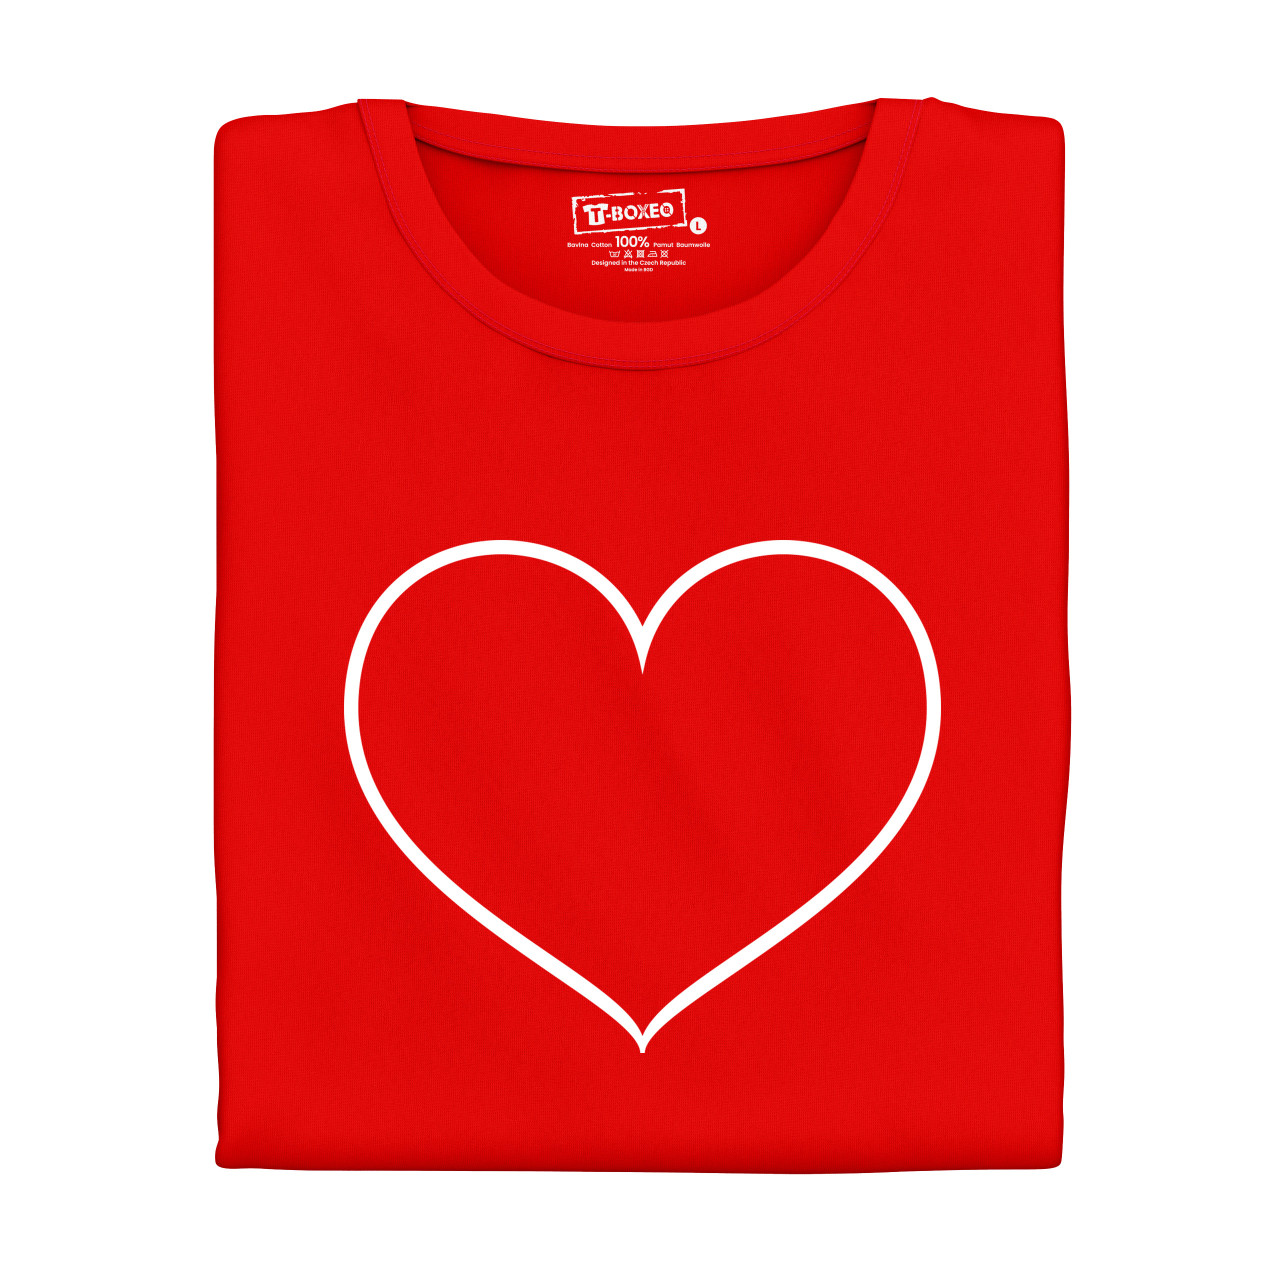 Dámské tričko s potiskem "Srdce"